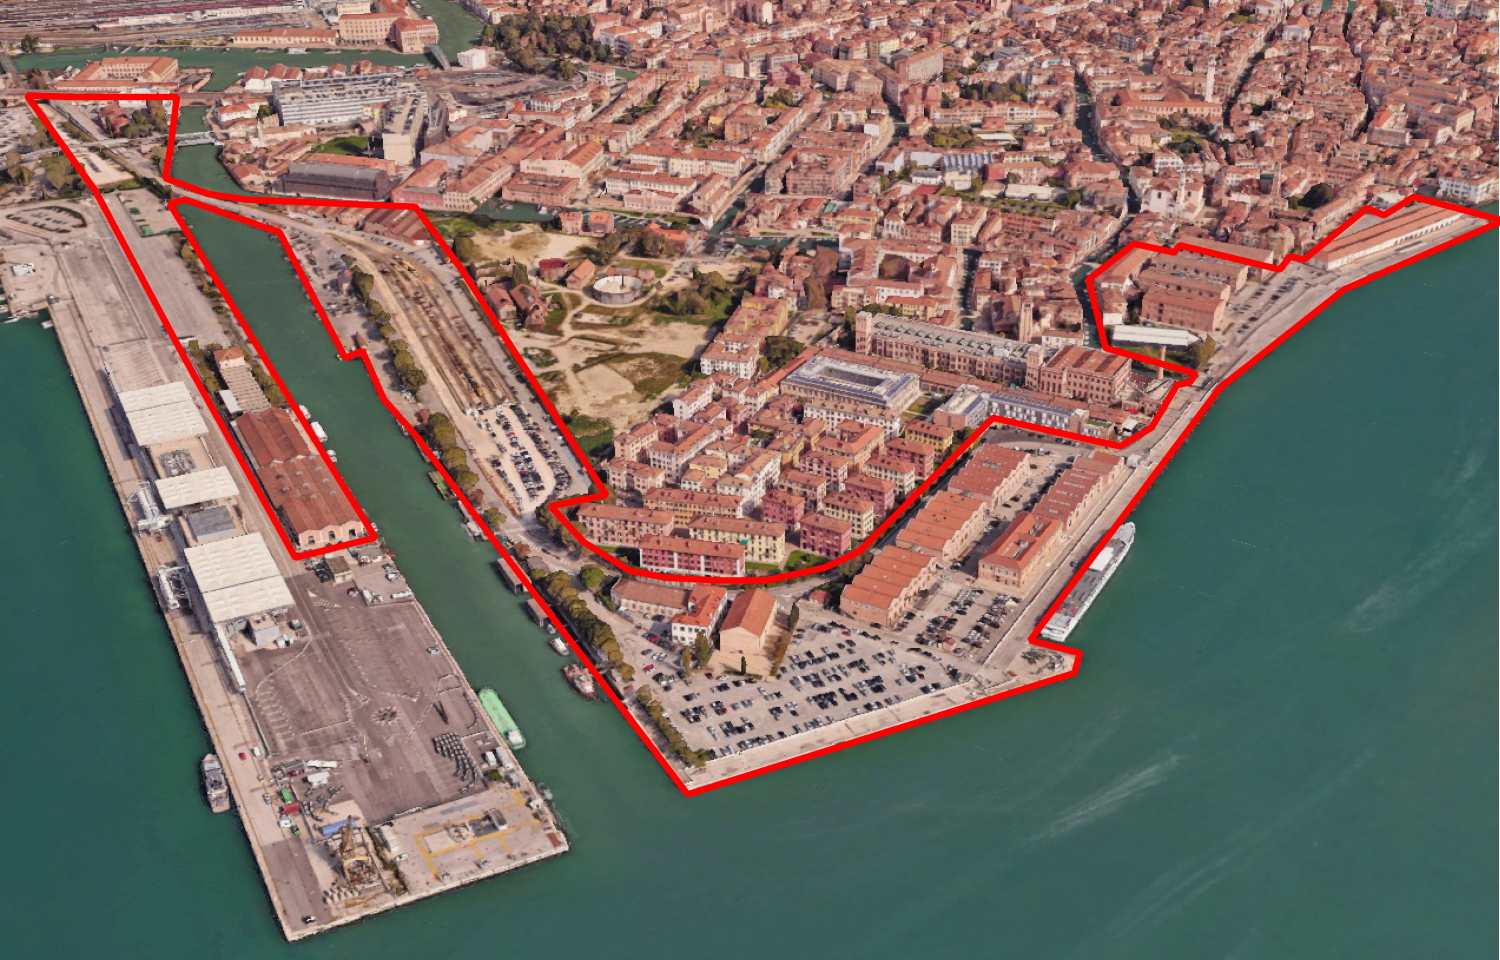 Waterfront di Venezia e Chioggia: avviato il processo di riqualificazione delle aree, grazie anche al finanziamento di un milione dal Mit